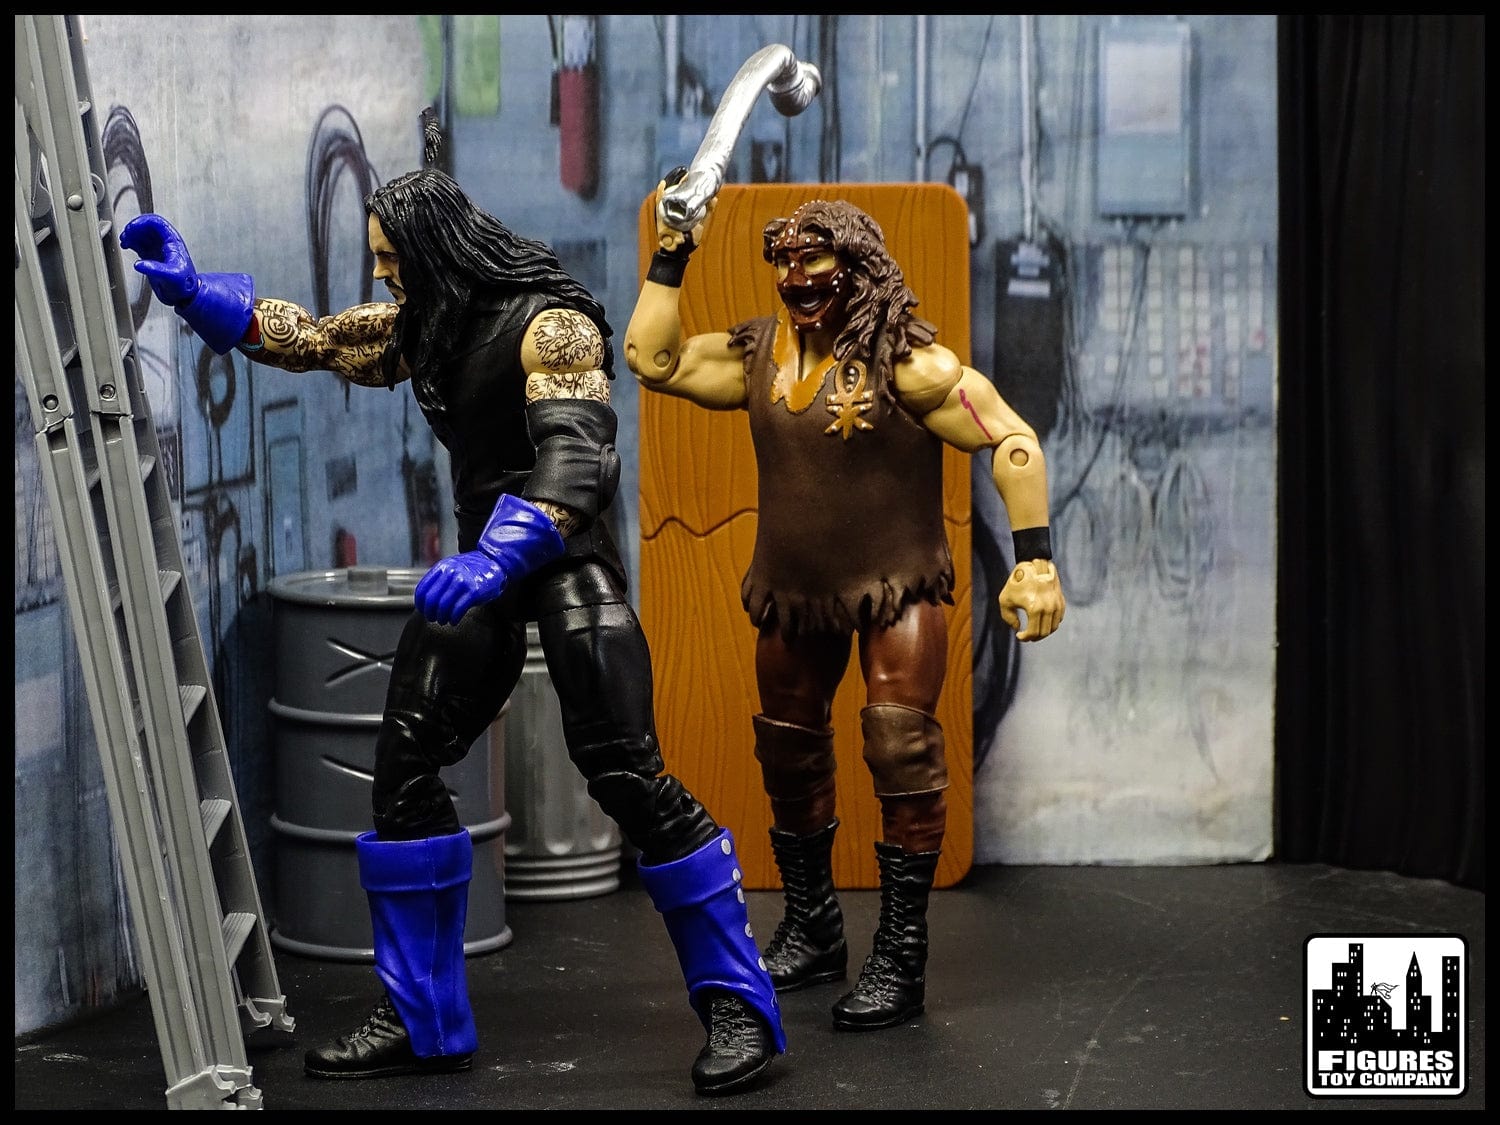 Set of 3 Doors for WWE & AEW Wrestling Action Figures - Figures